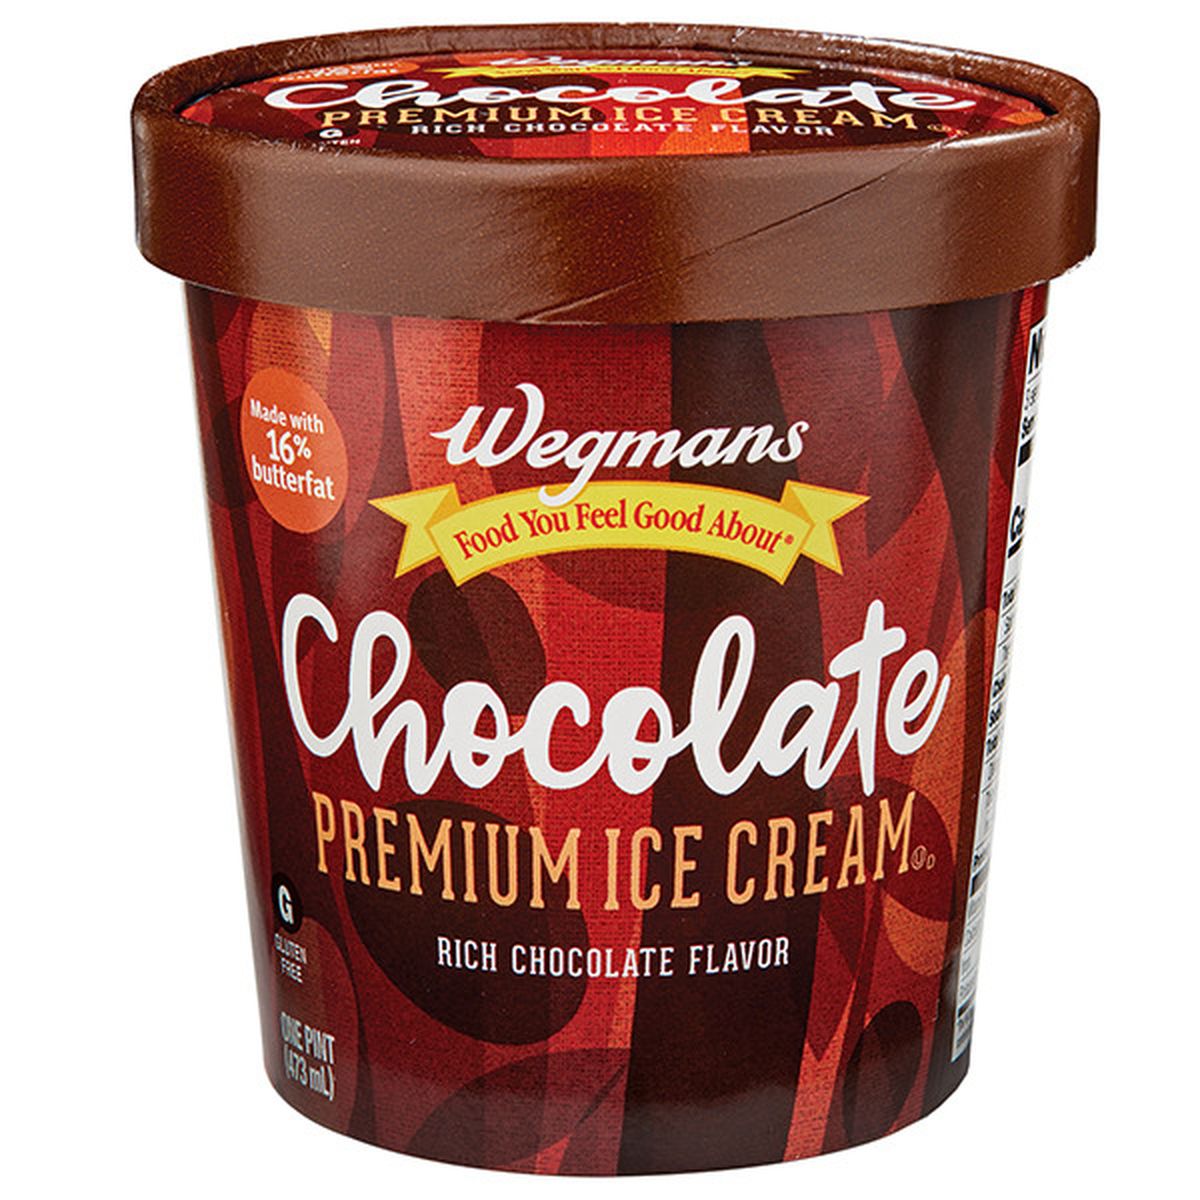 Calories in Wegmans Chocolate Premium Ice Cream